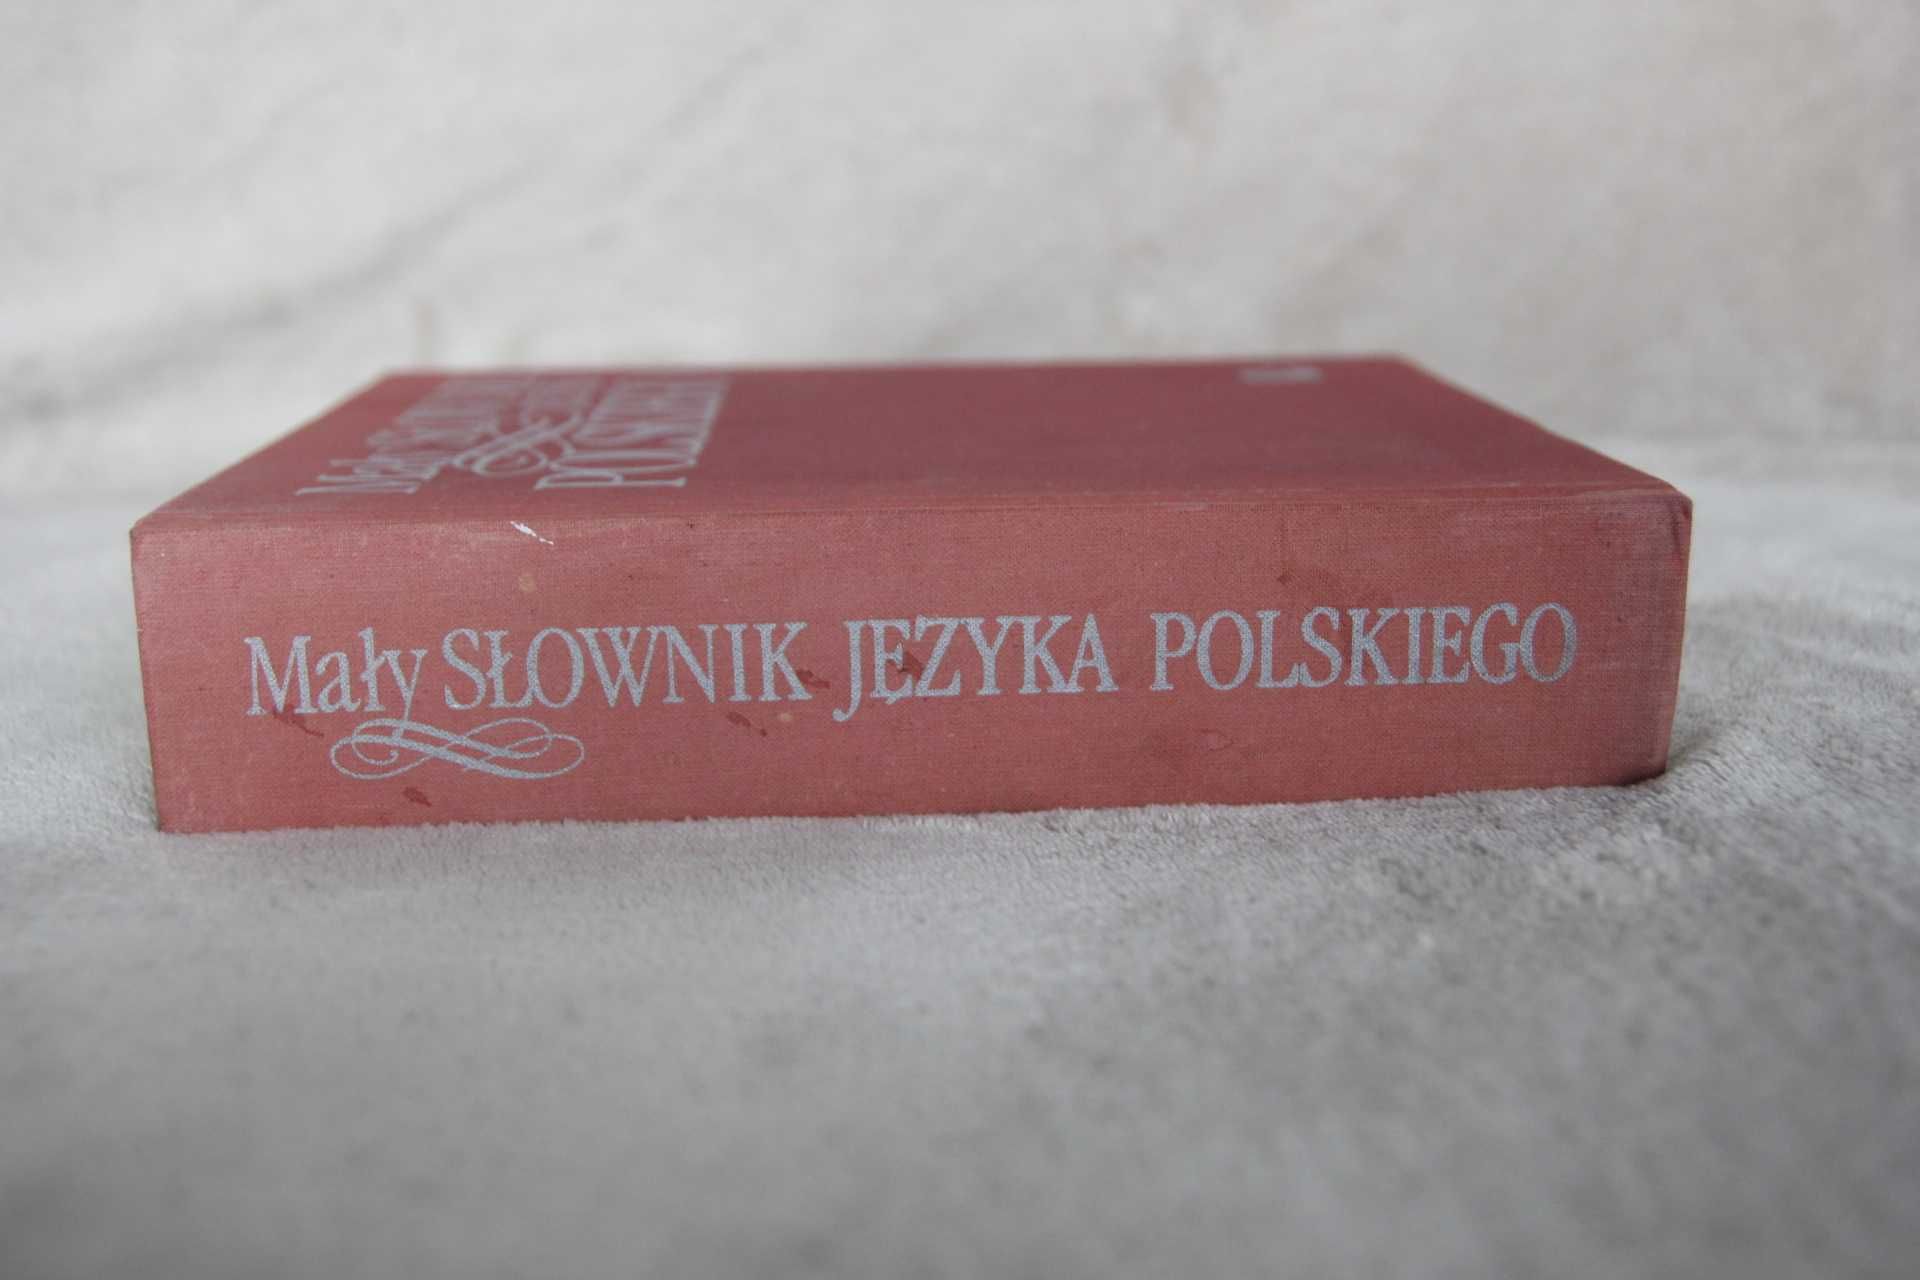 Mały słownik polskiego PWN 1969 real foto